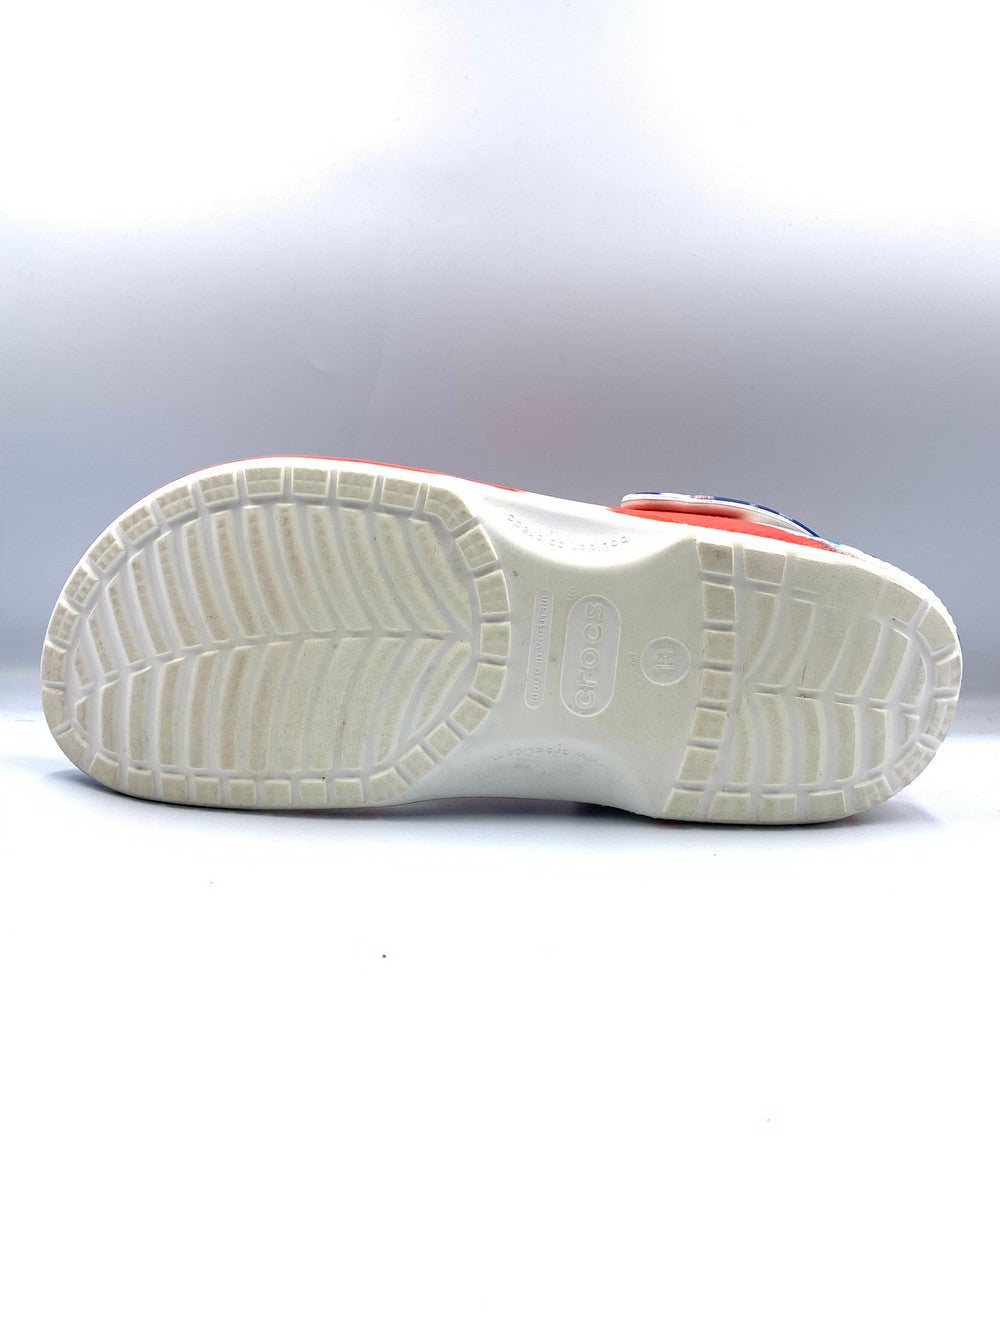 Crocs Original Brand Slipper For Men